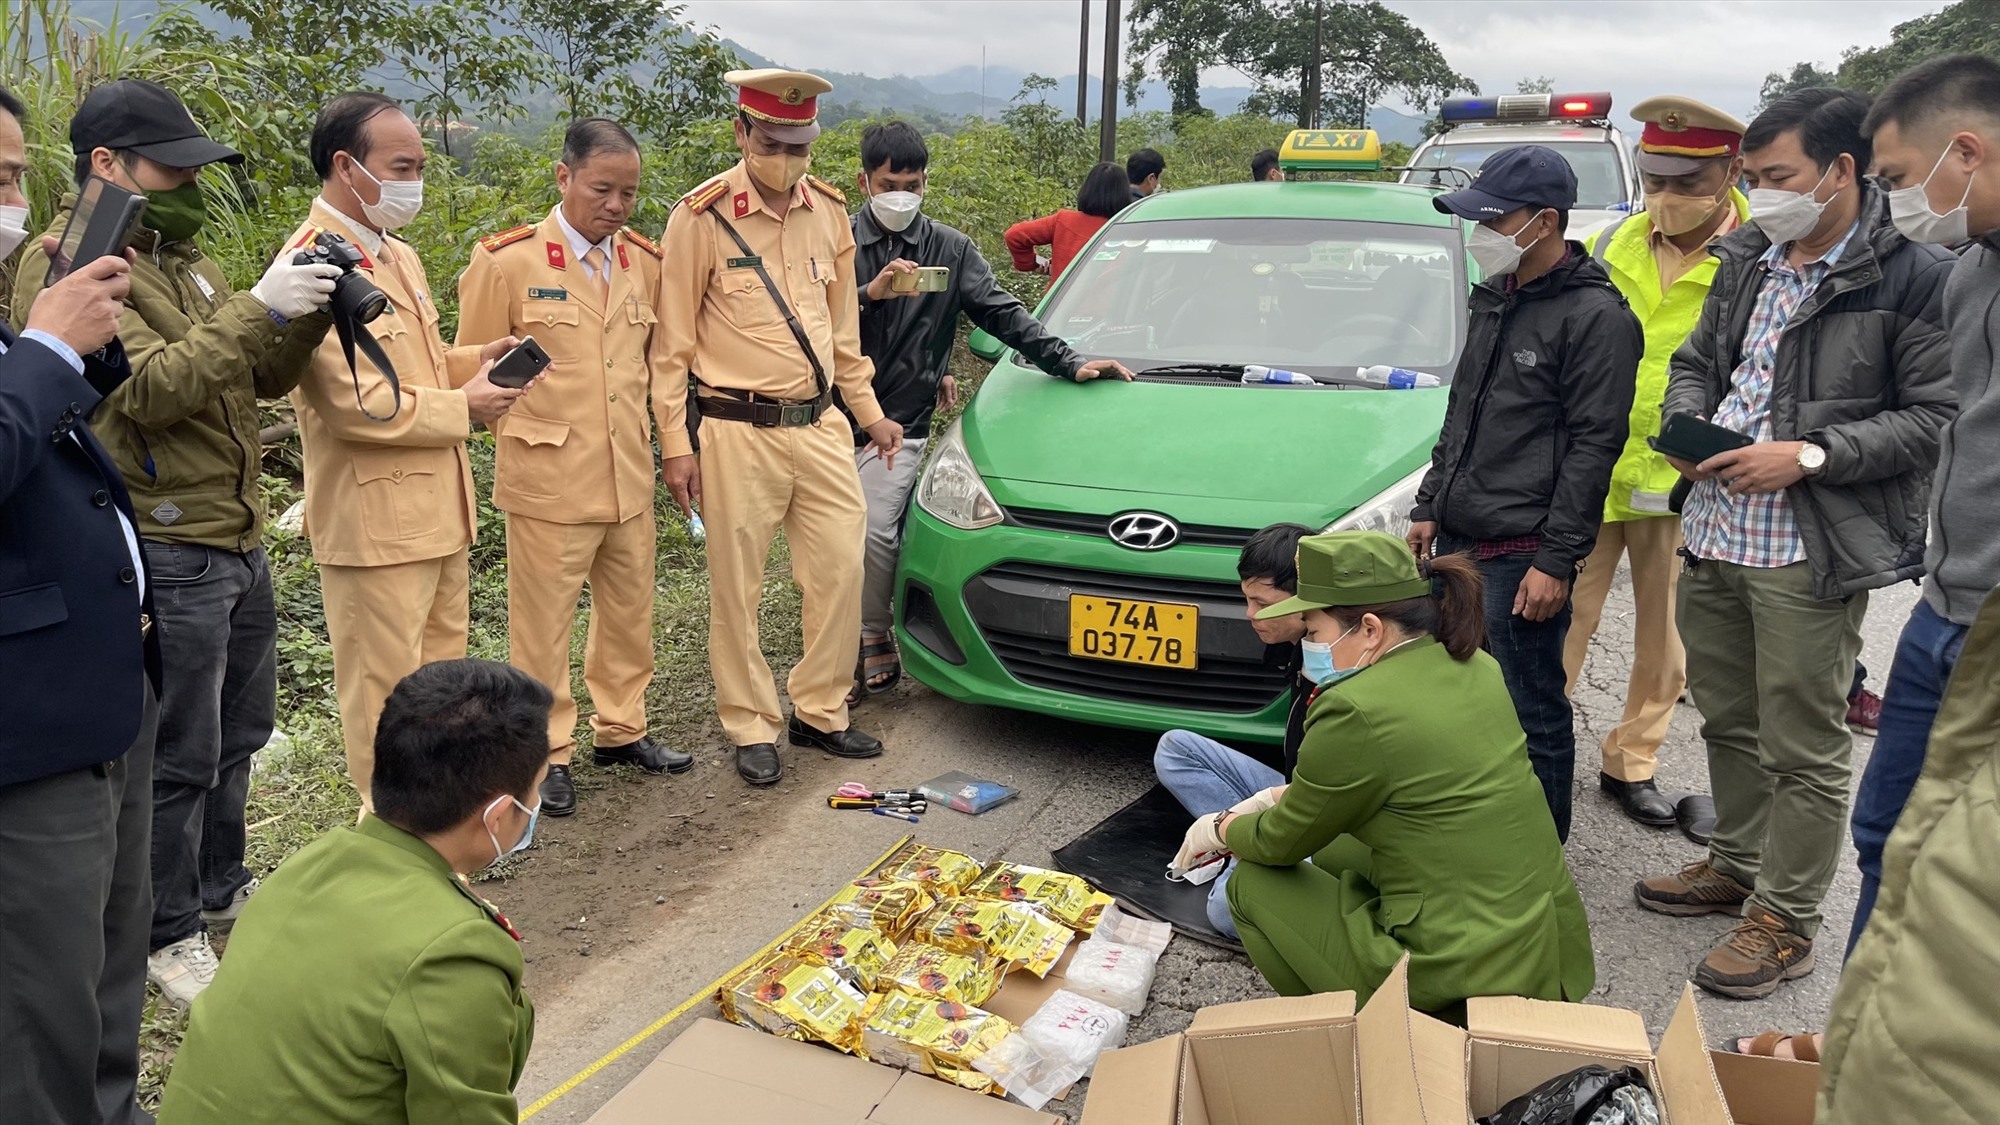 Lực lượng chức năng phát hiện 10 kg ma túy đá trên xe ô tô 74A - 037.78 - Ảnh: Phòng CSGT